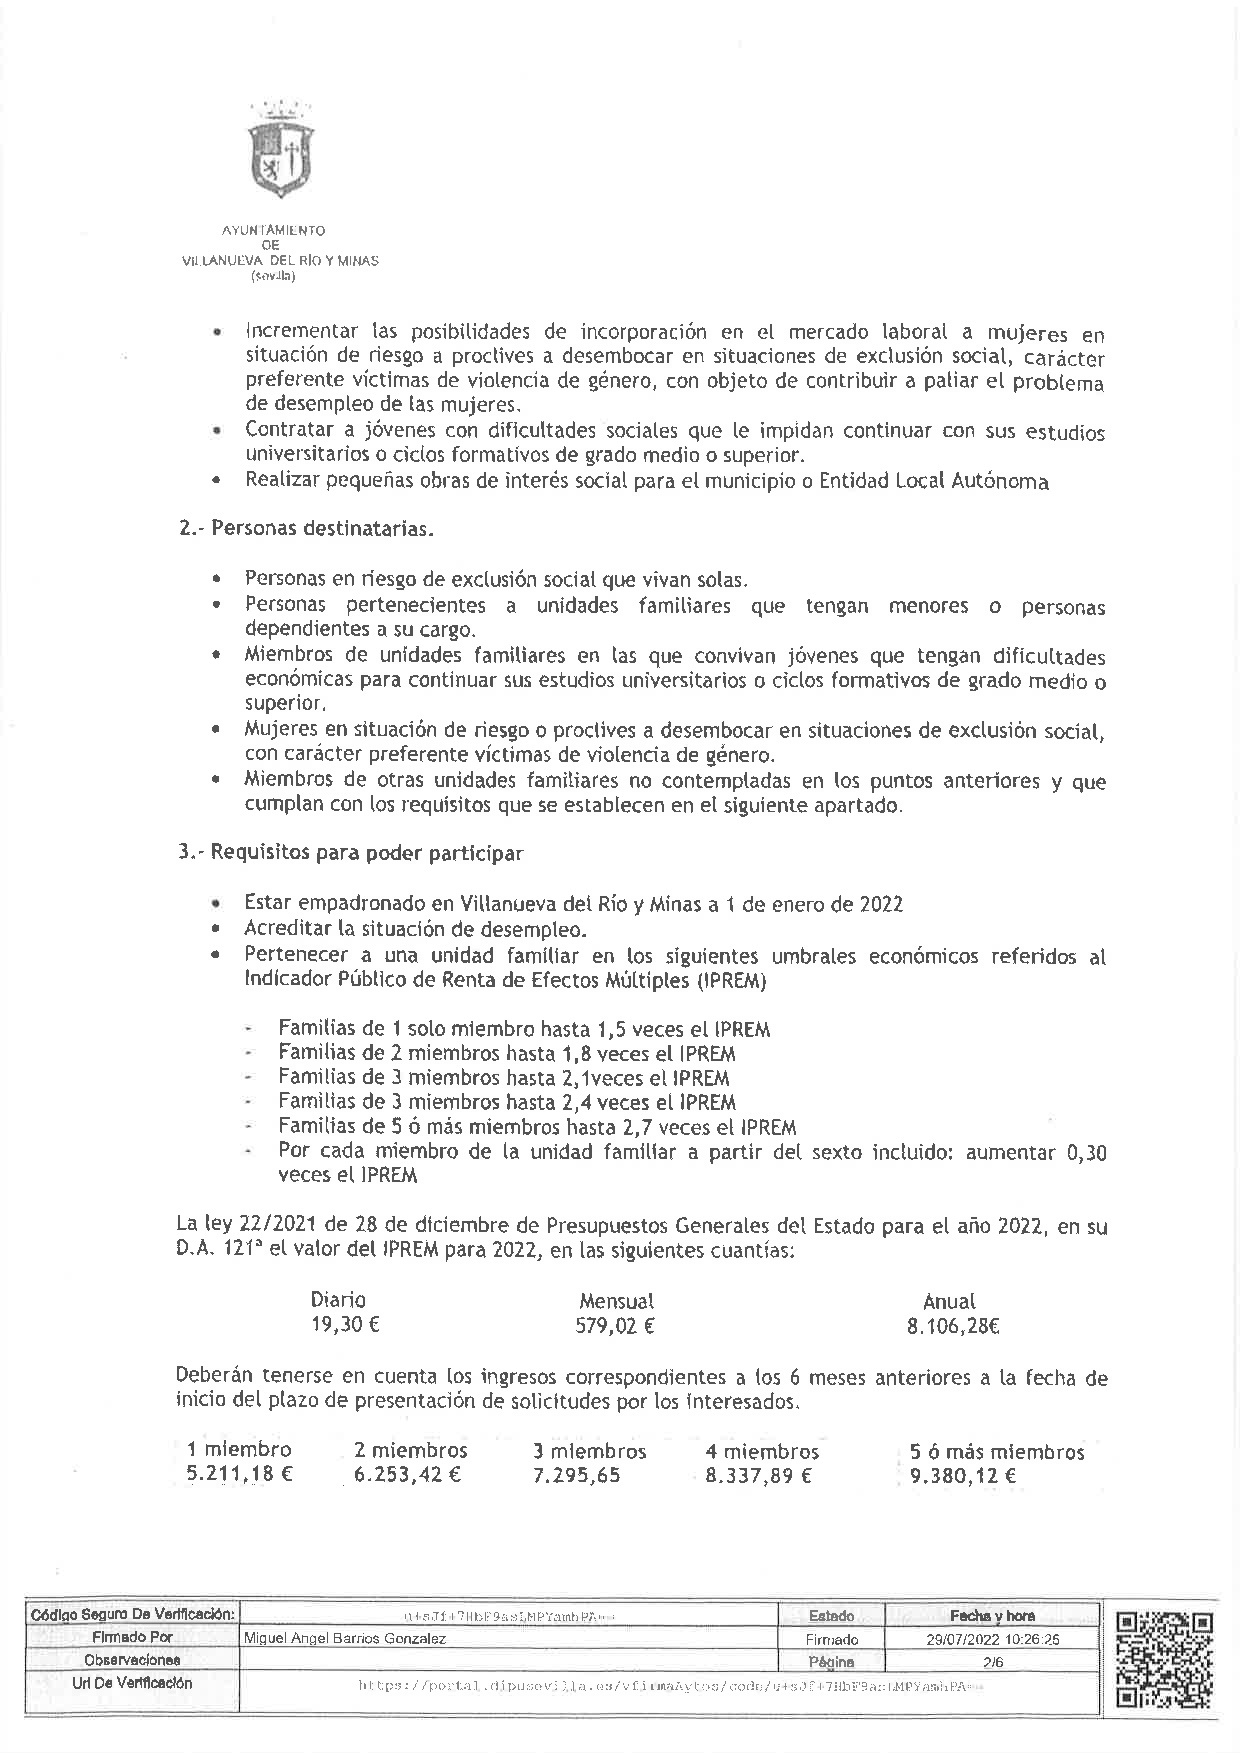 DECRETO DE ALCALDIA Nº 149. BASES PROGRAMA PREVENCION DE LA EXCLUSION SOCIAL, DEL PLAN ACTUA-002